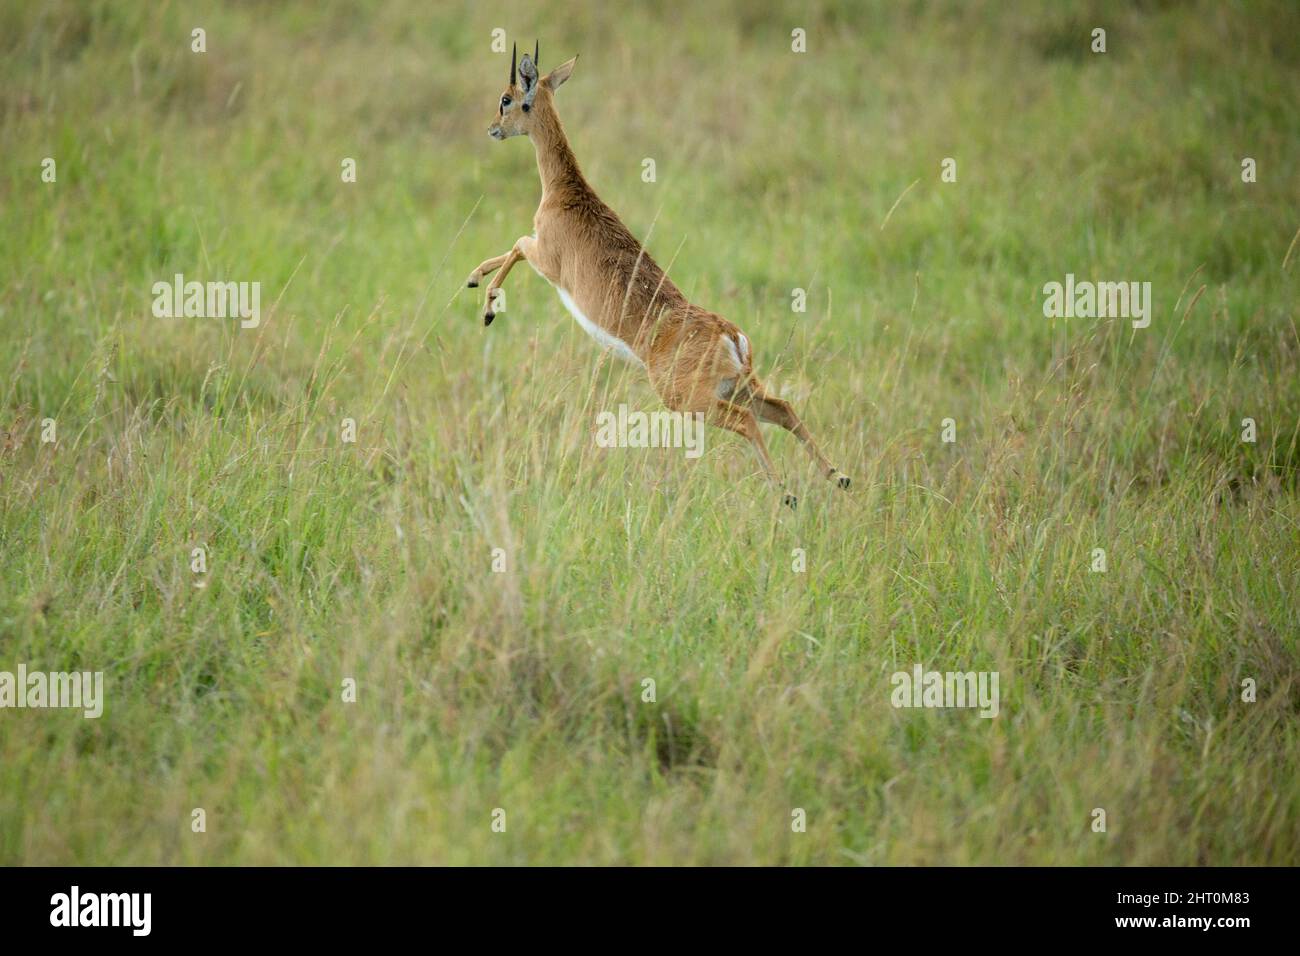 Oribi (Ourebia ourebi) male leaping through grass. Serengeti National Park, Tanzania Stock Photo